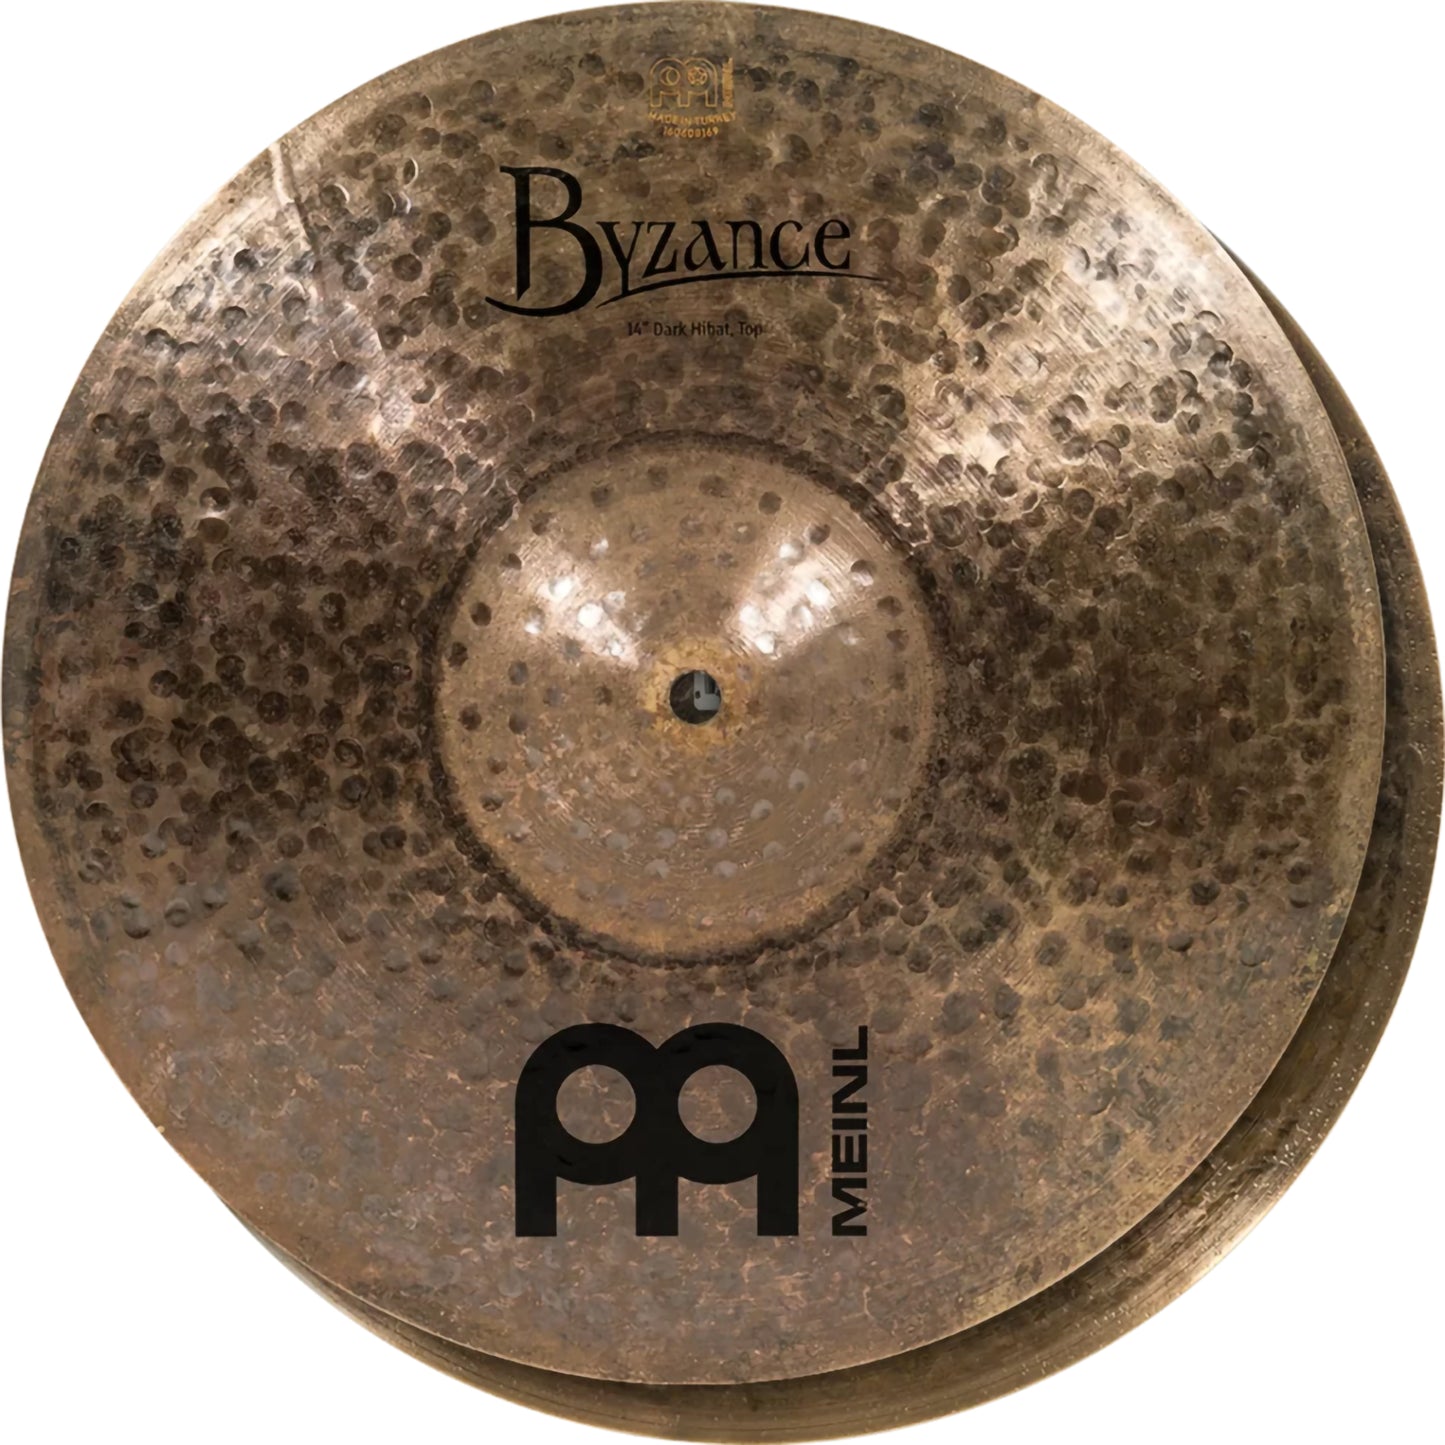 Meinl 14” Byzance Dark Hi-Hat Cymbals